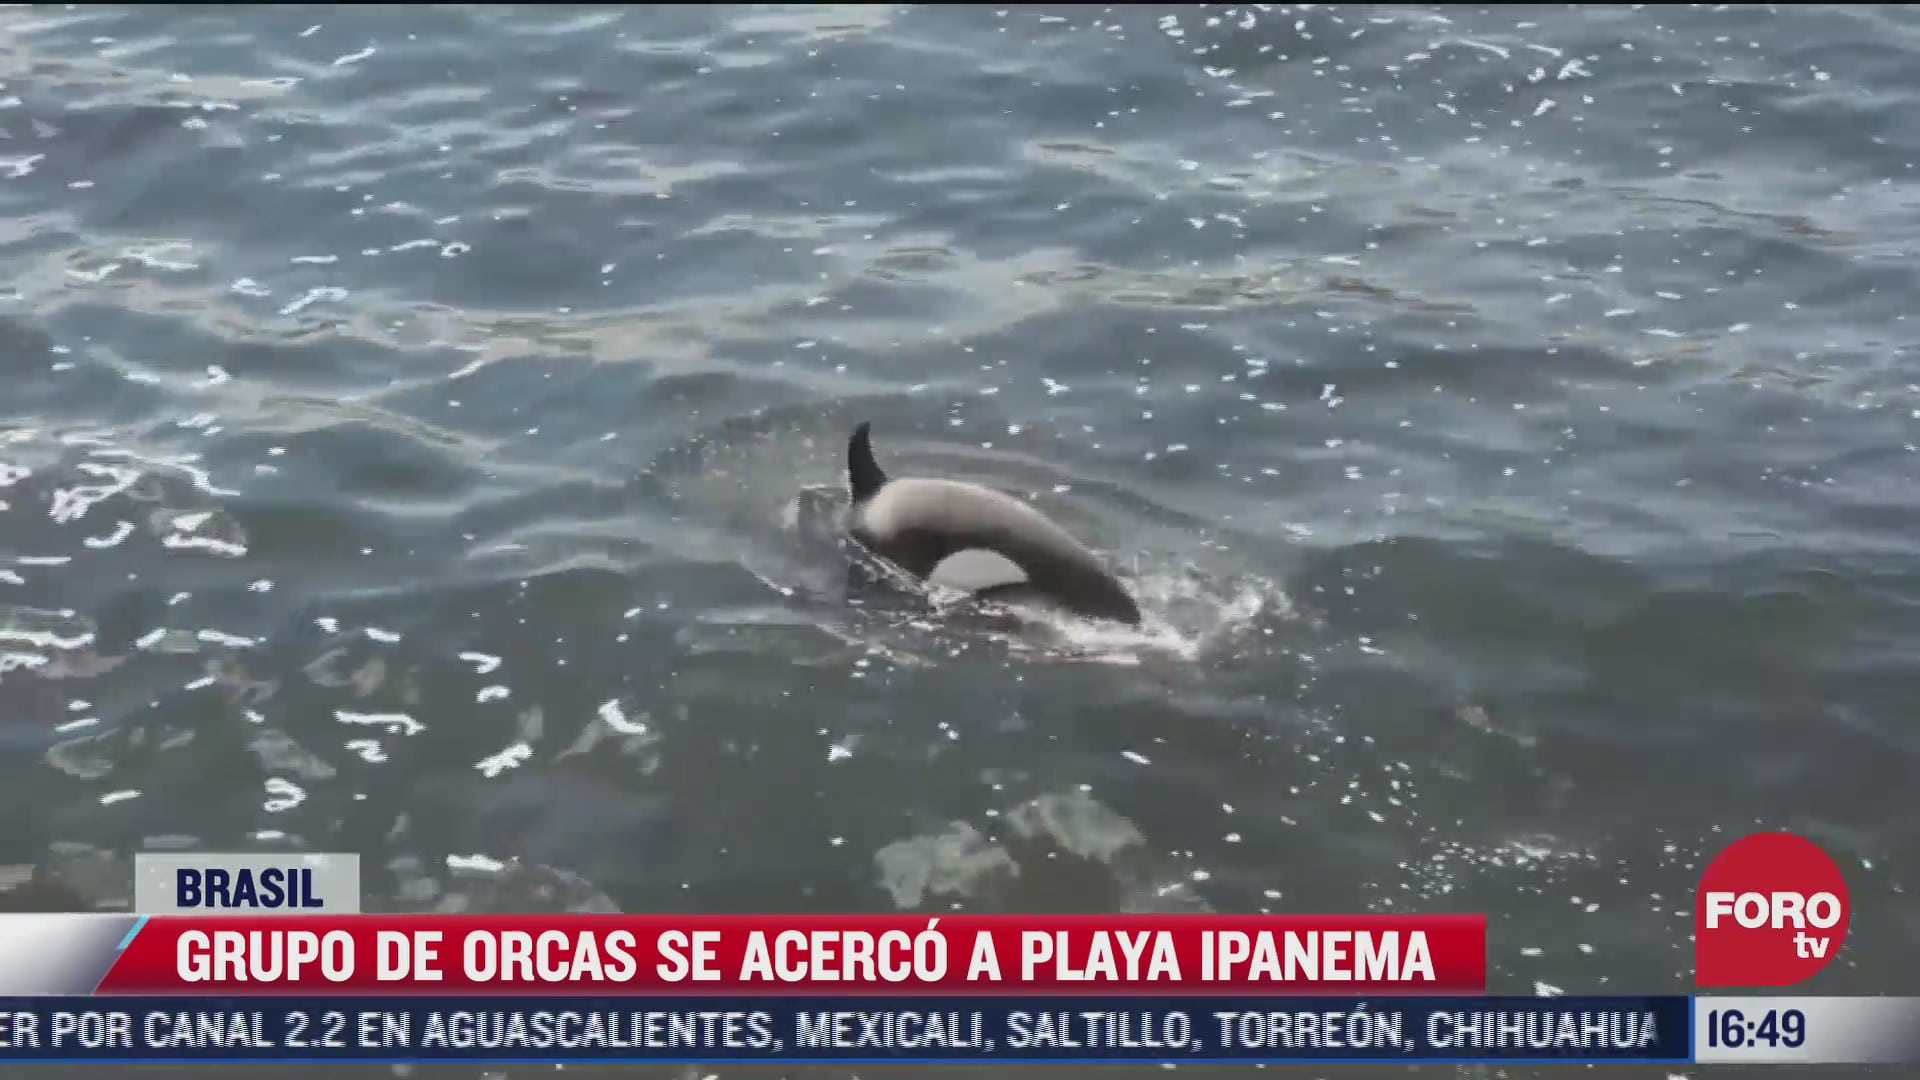 captan orcas cerca de la playa ipanema en brasil